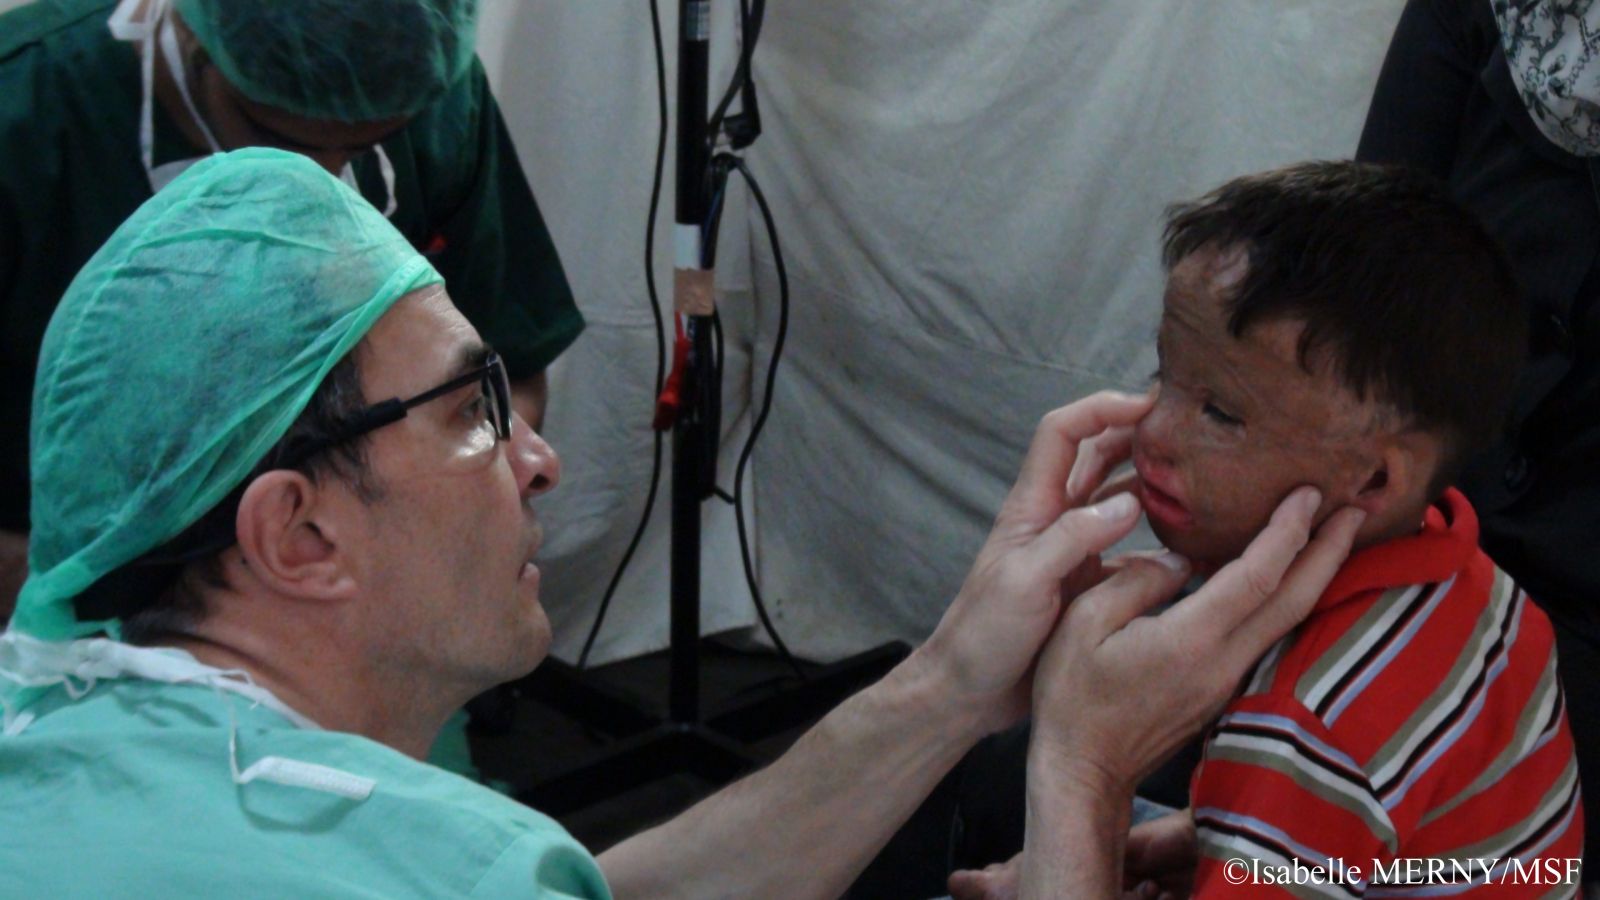 칸 유니스의 국경없는의사회 병원, 유세프 가 수술 전 진료를 받고 있다. ©Isabelle MERNY/ MSF